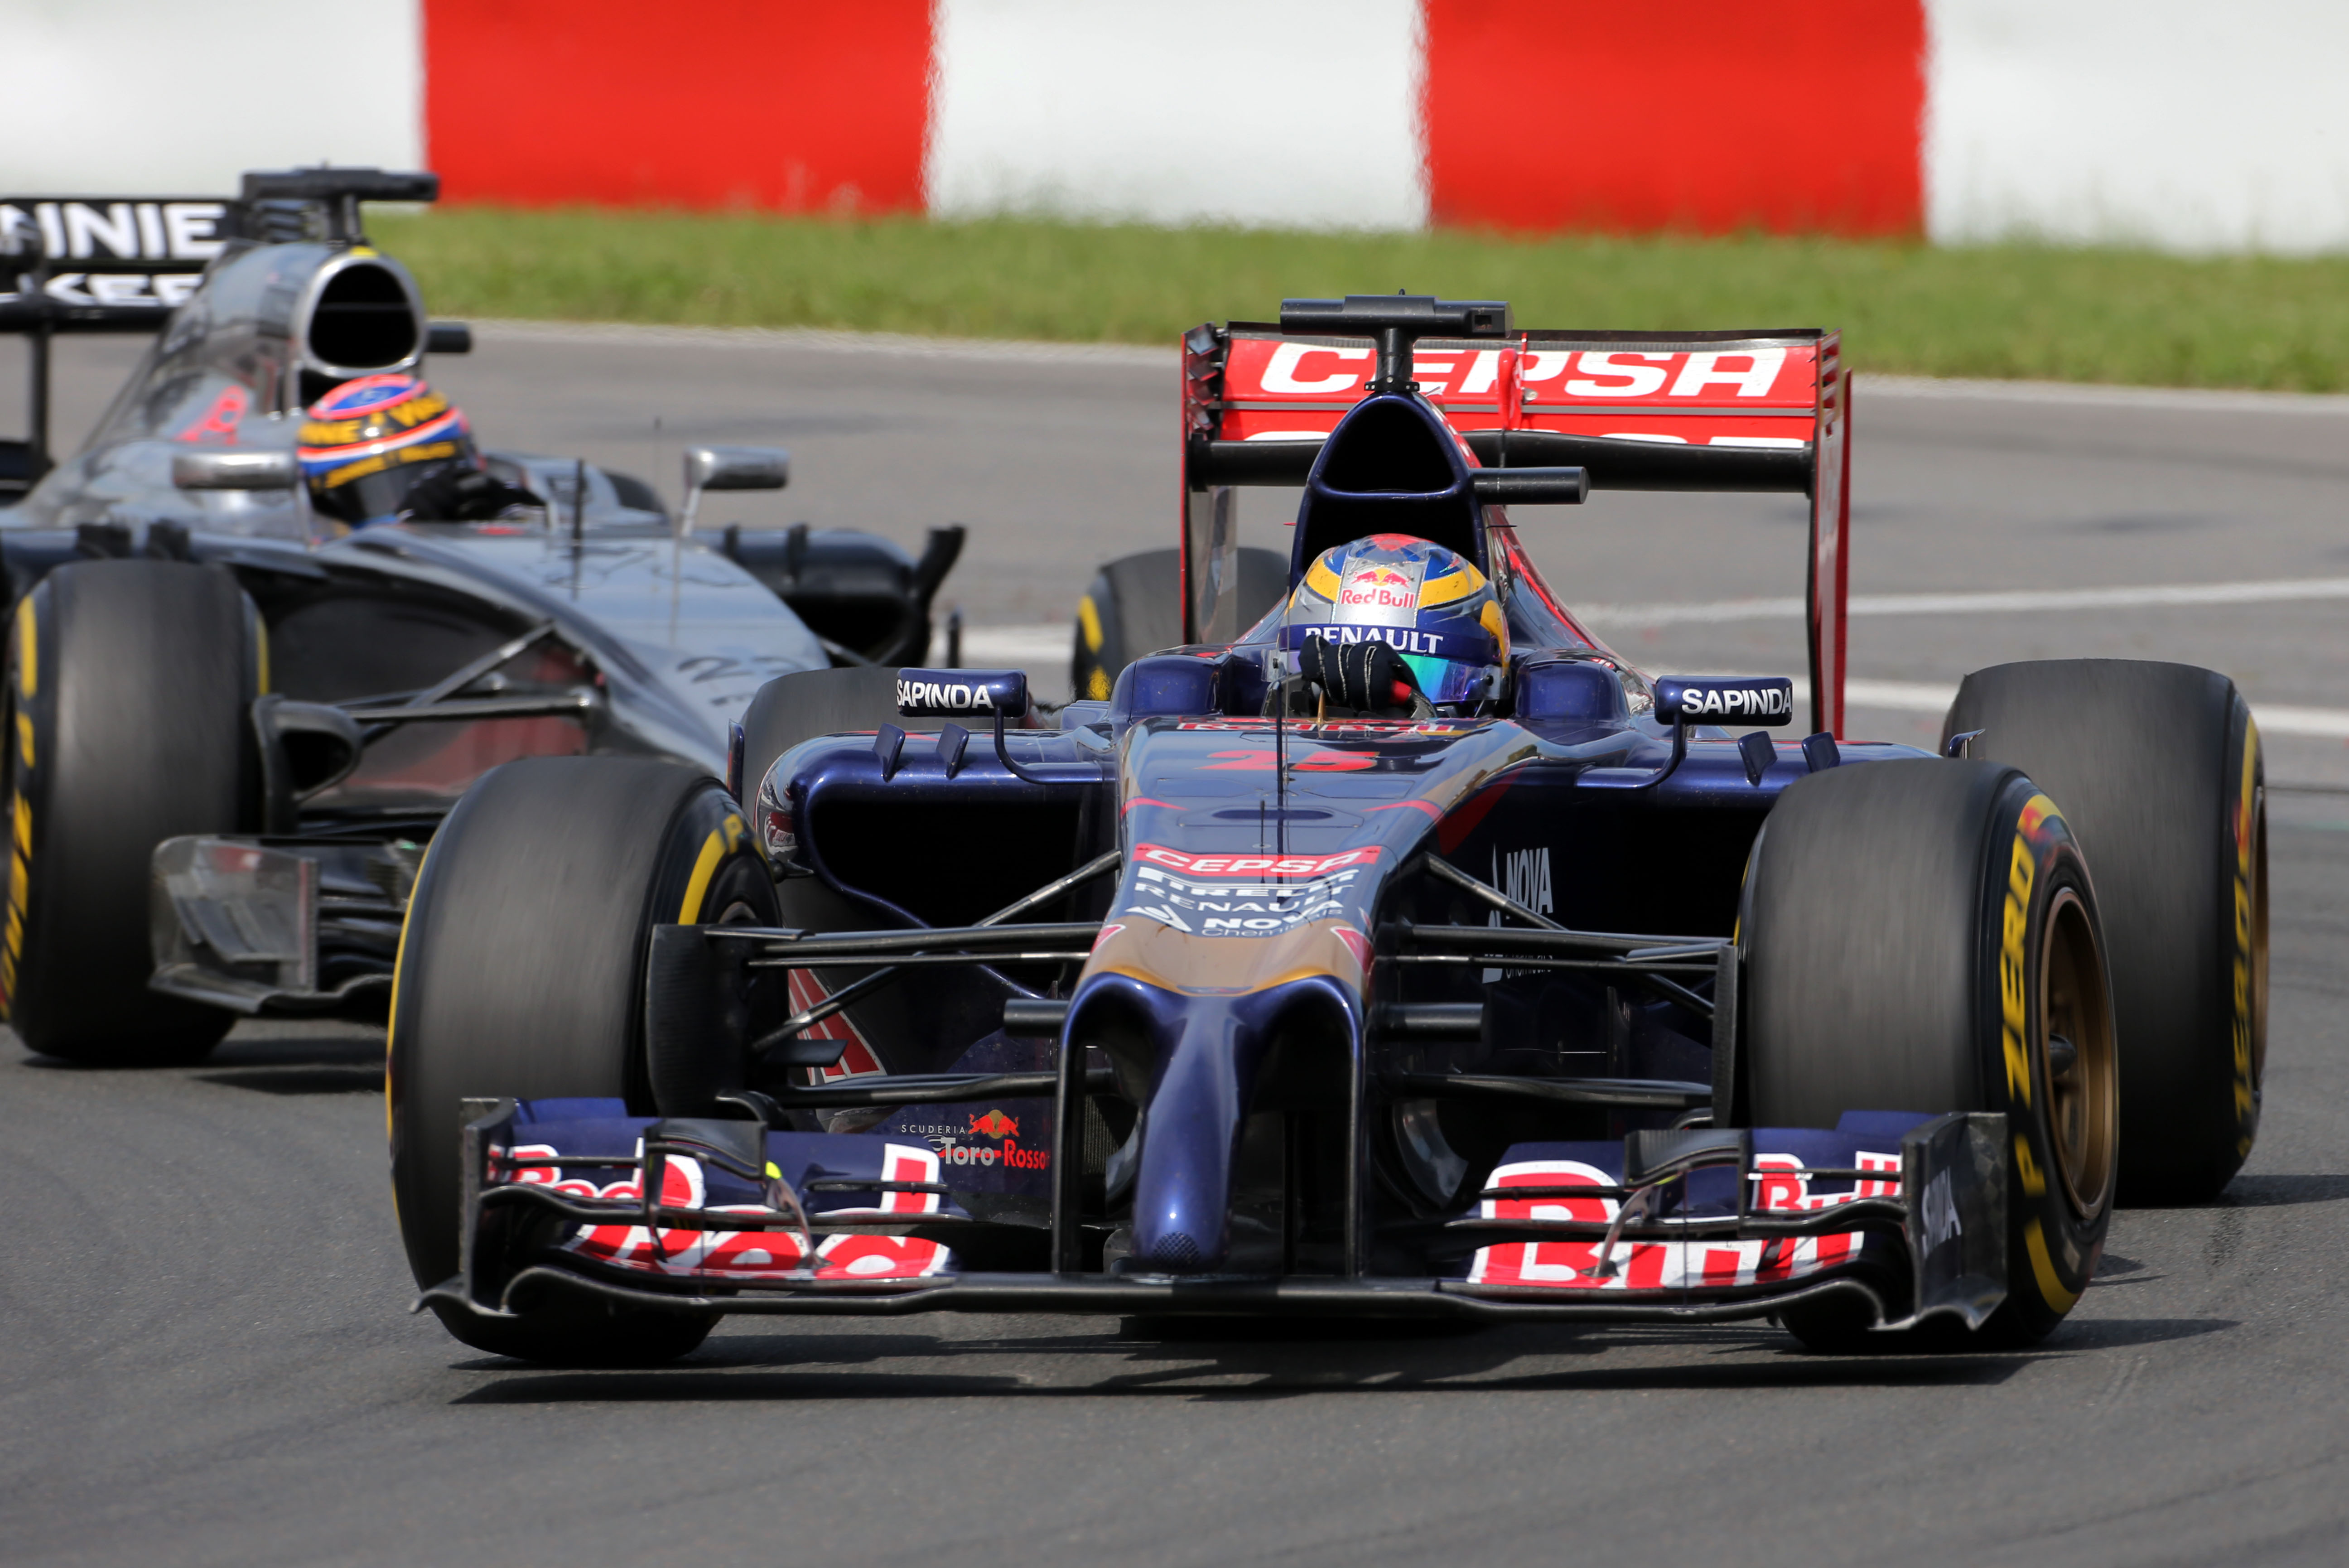 Vergne blij voor Ricciardo en met eigen race